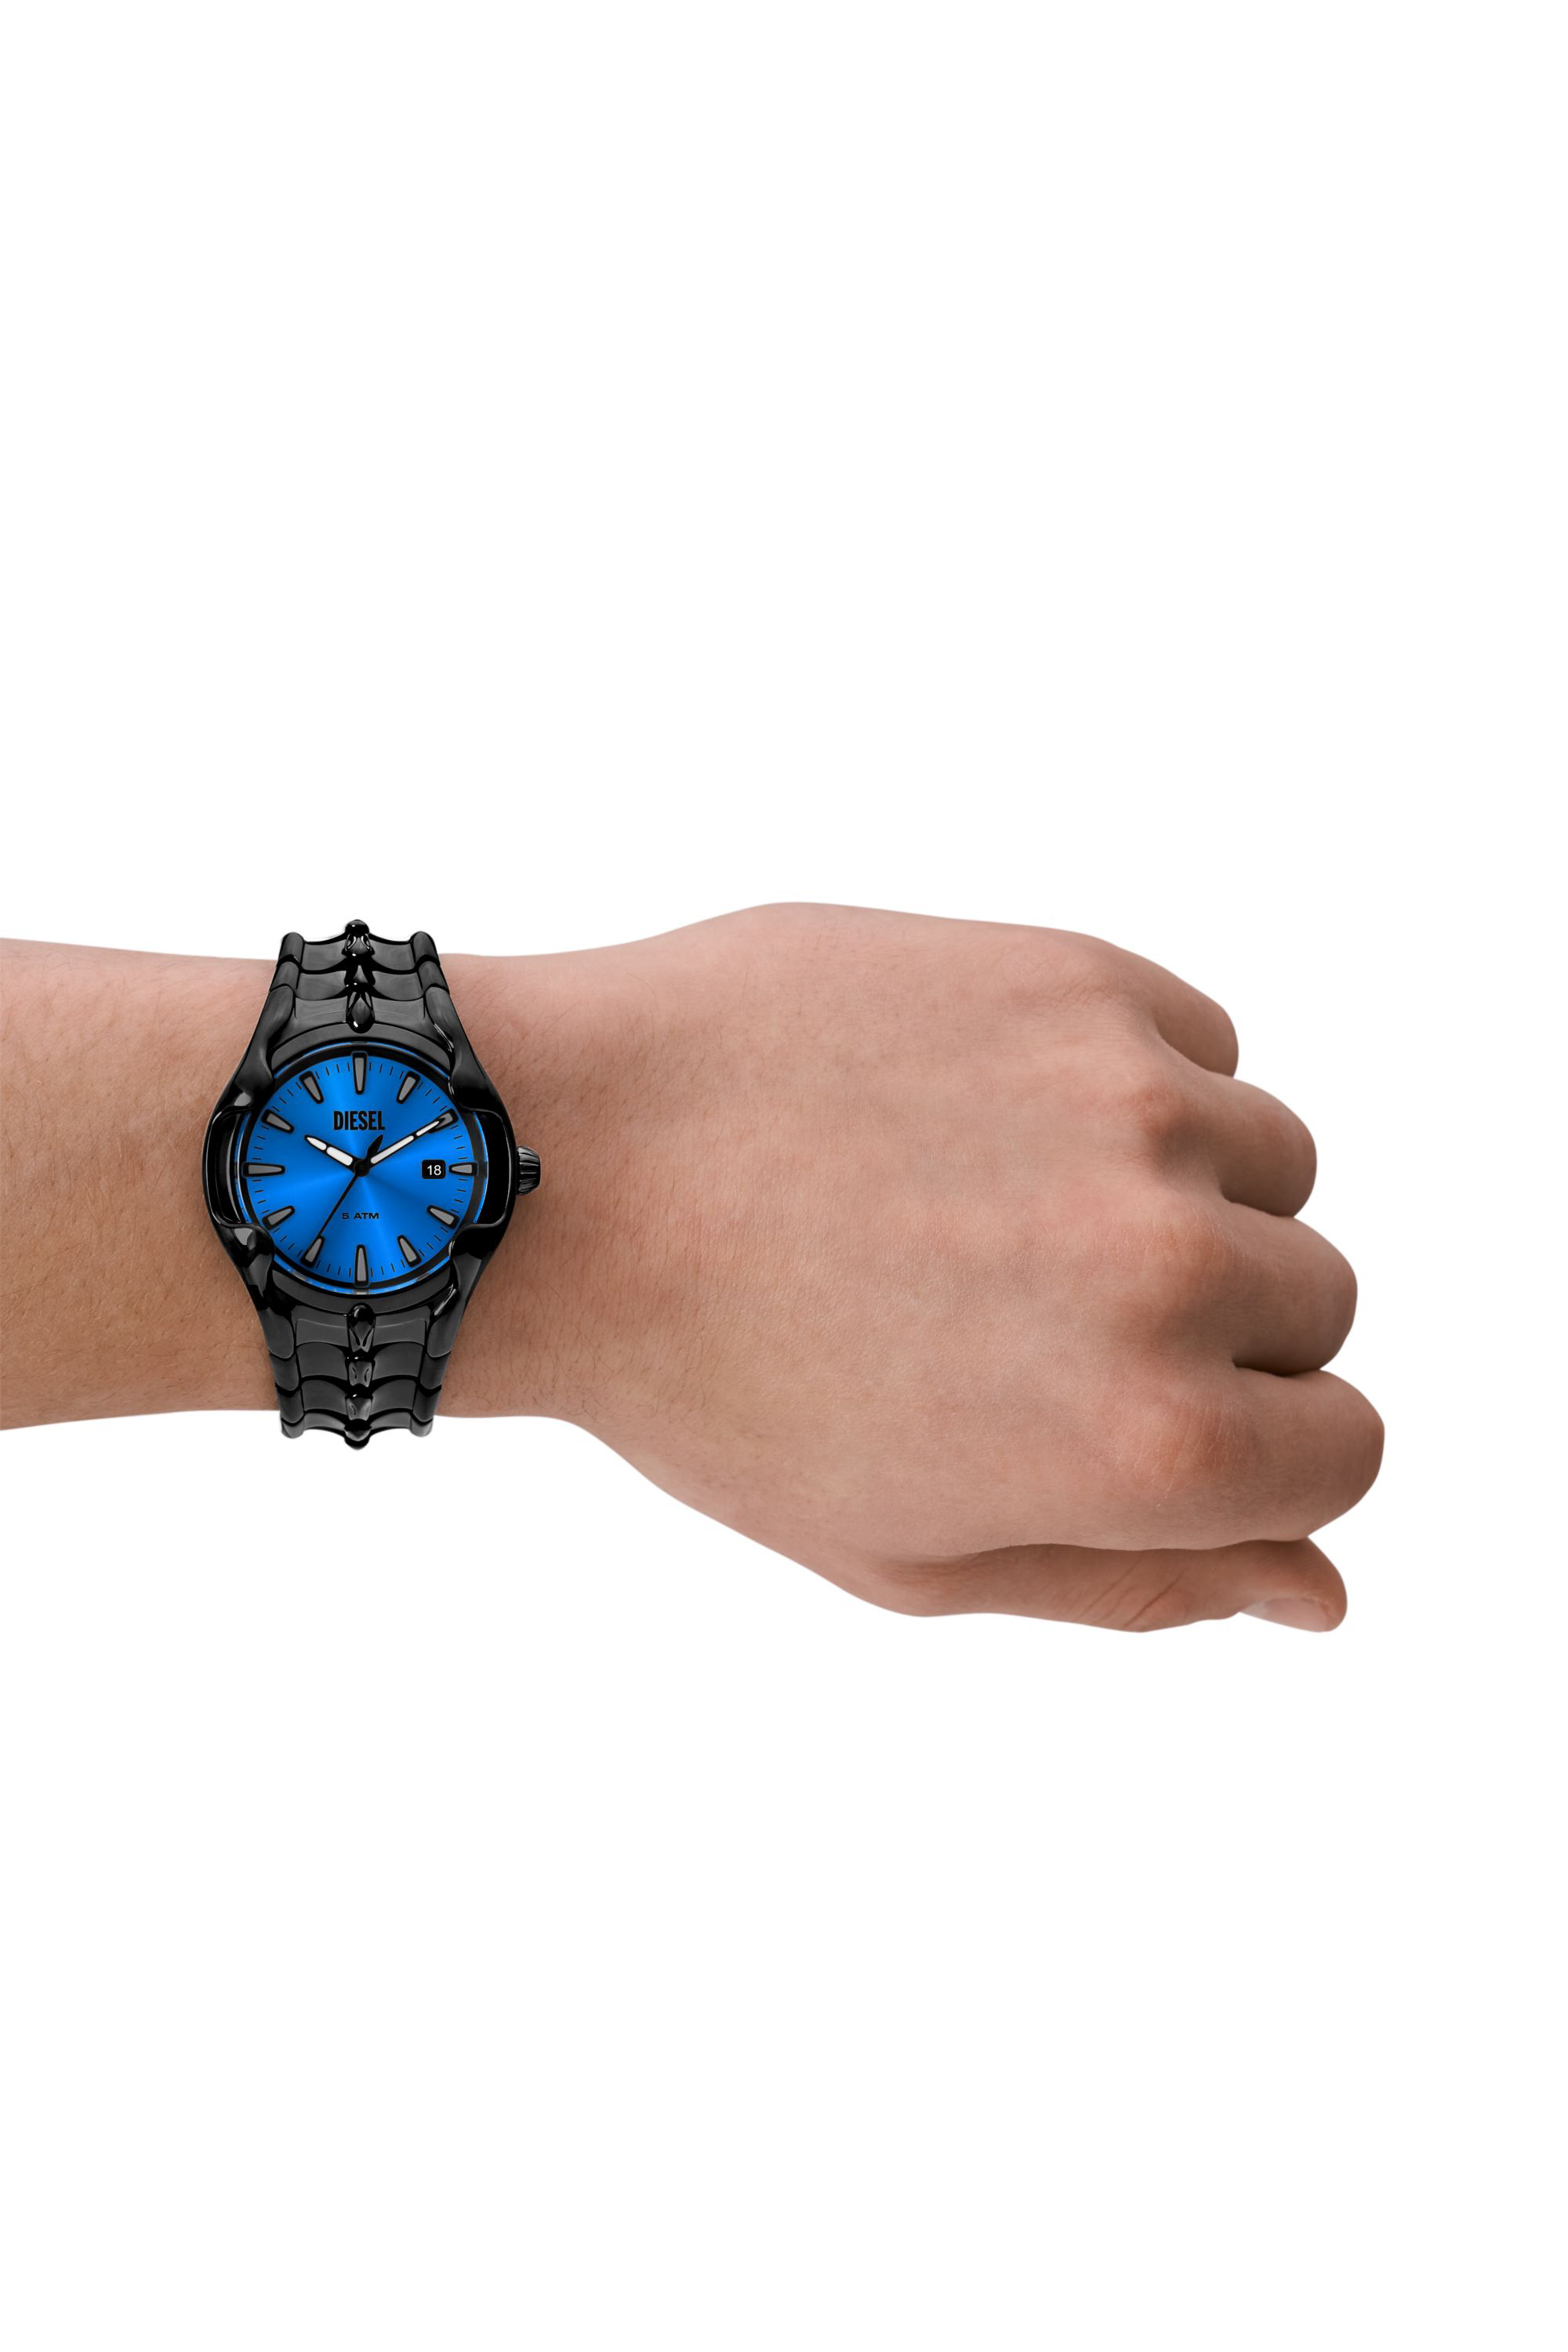 Men's wristwatches: digital, analog, smartwatches | Diesel®